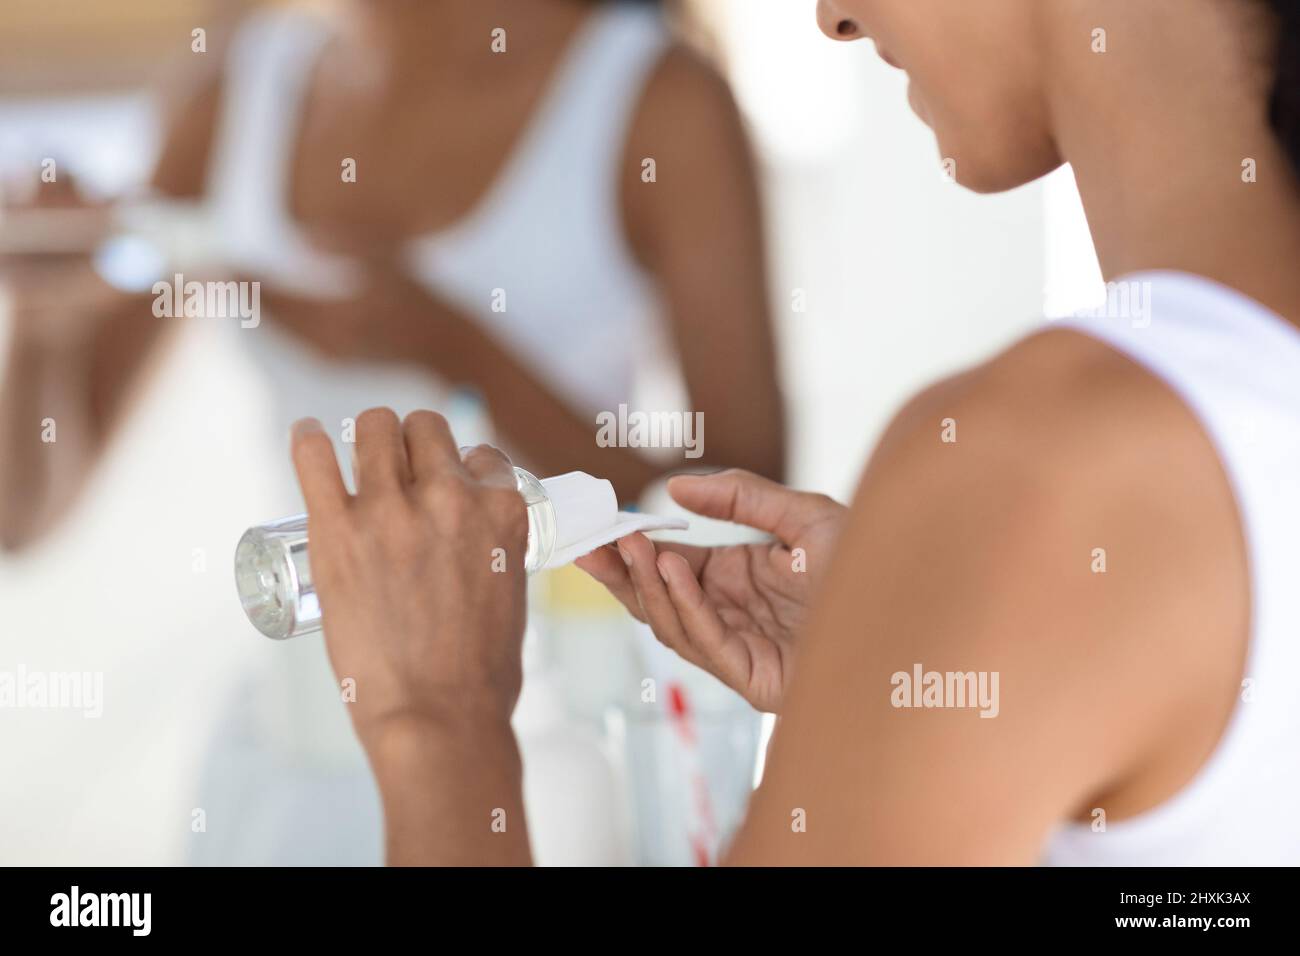 Gros plan d'une femme utilisant de l'eau micellaire et un tampon de coton pour le nettoyage de la peau Banque D'Images